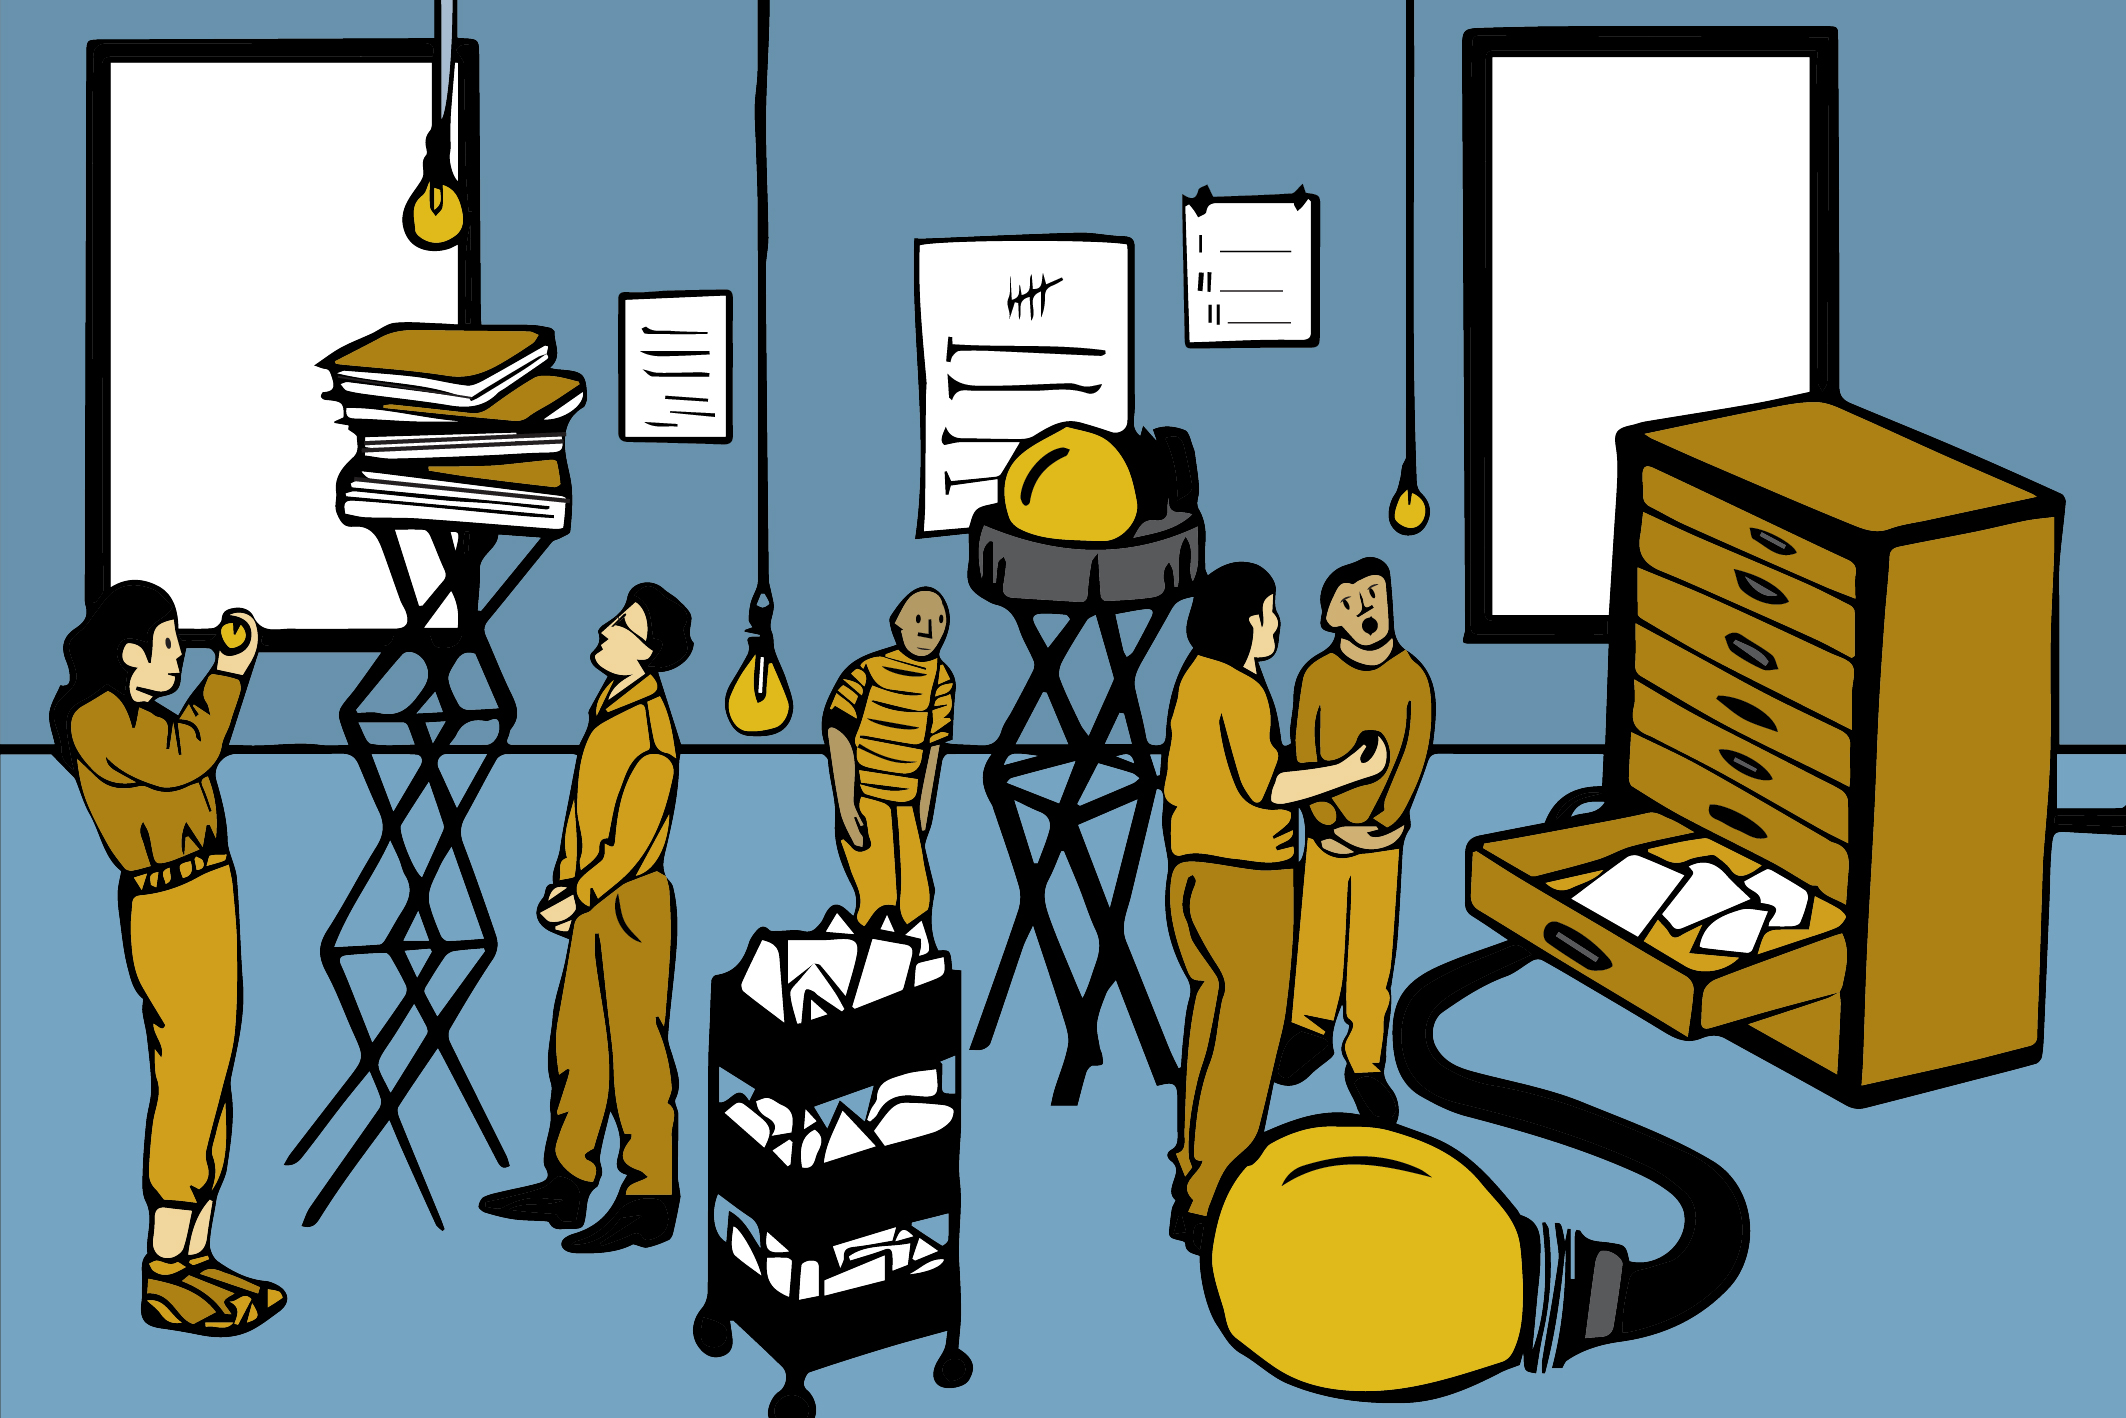 Illustratie waarbij personen in een fysieke werkplaats met ordners etc. aan het werk zijn